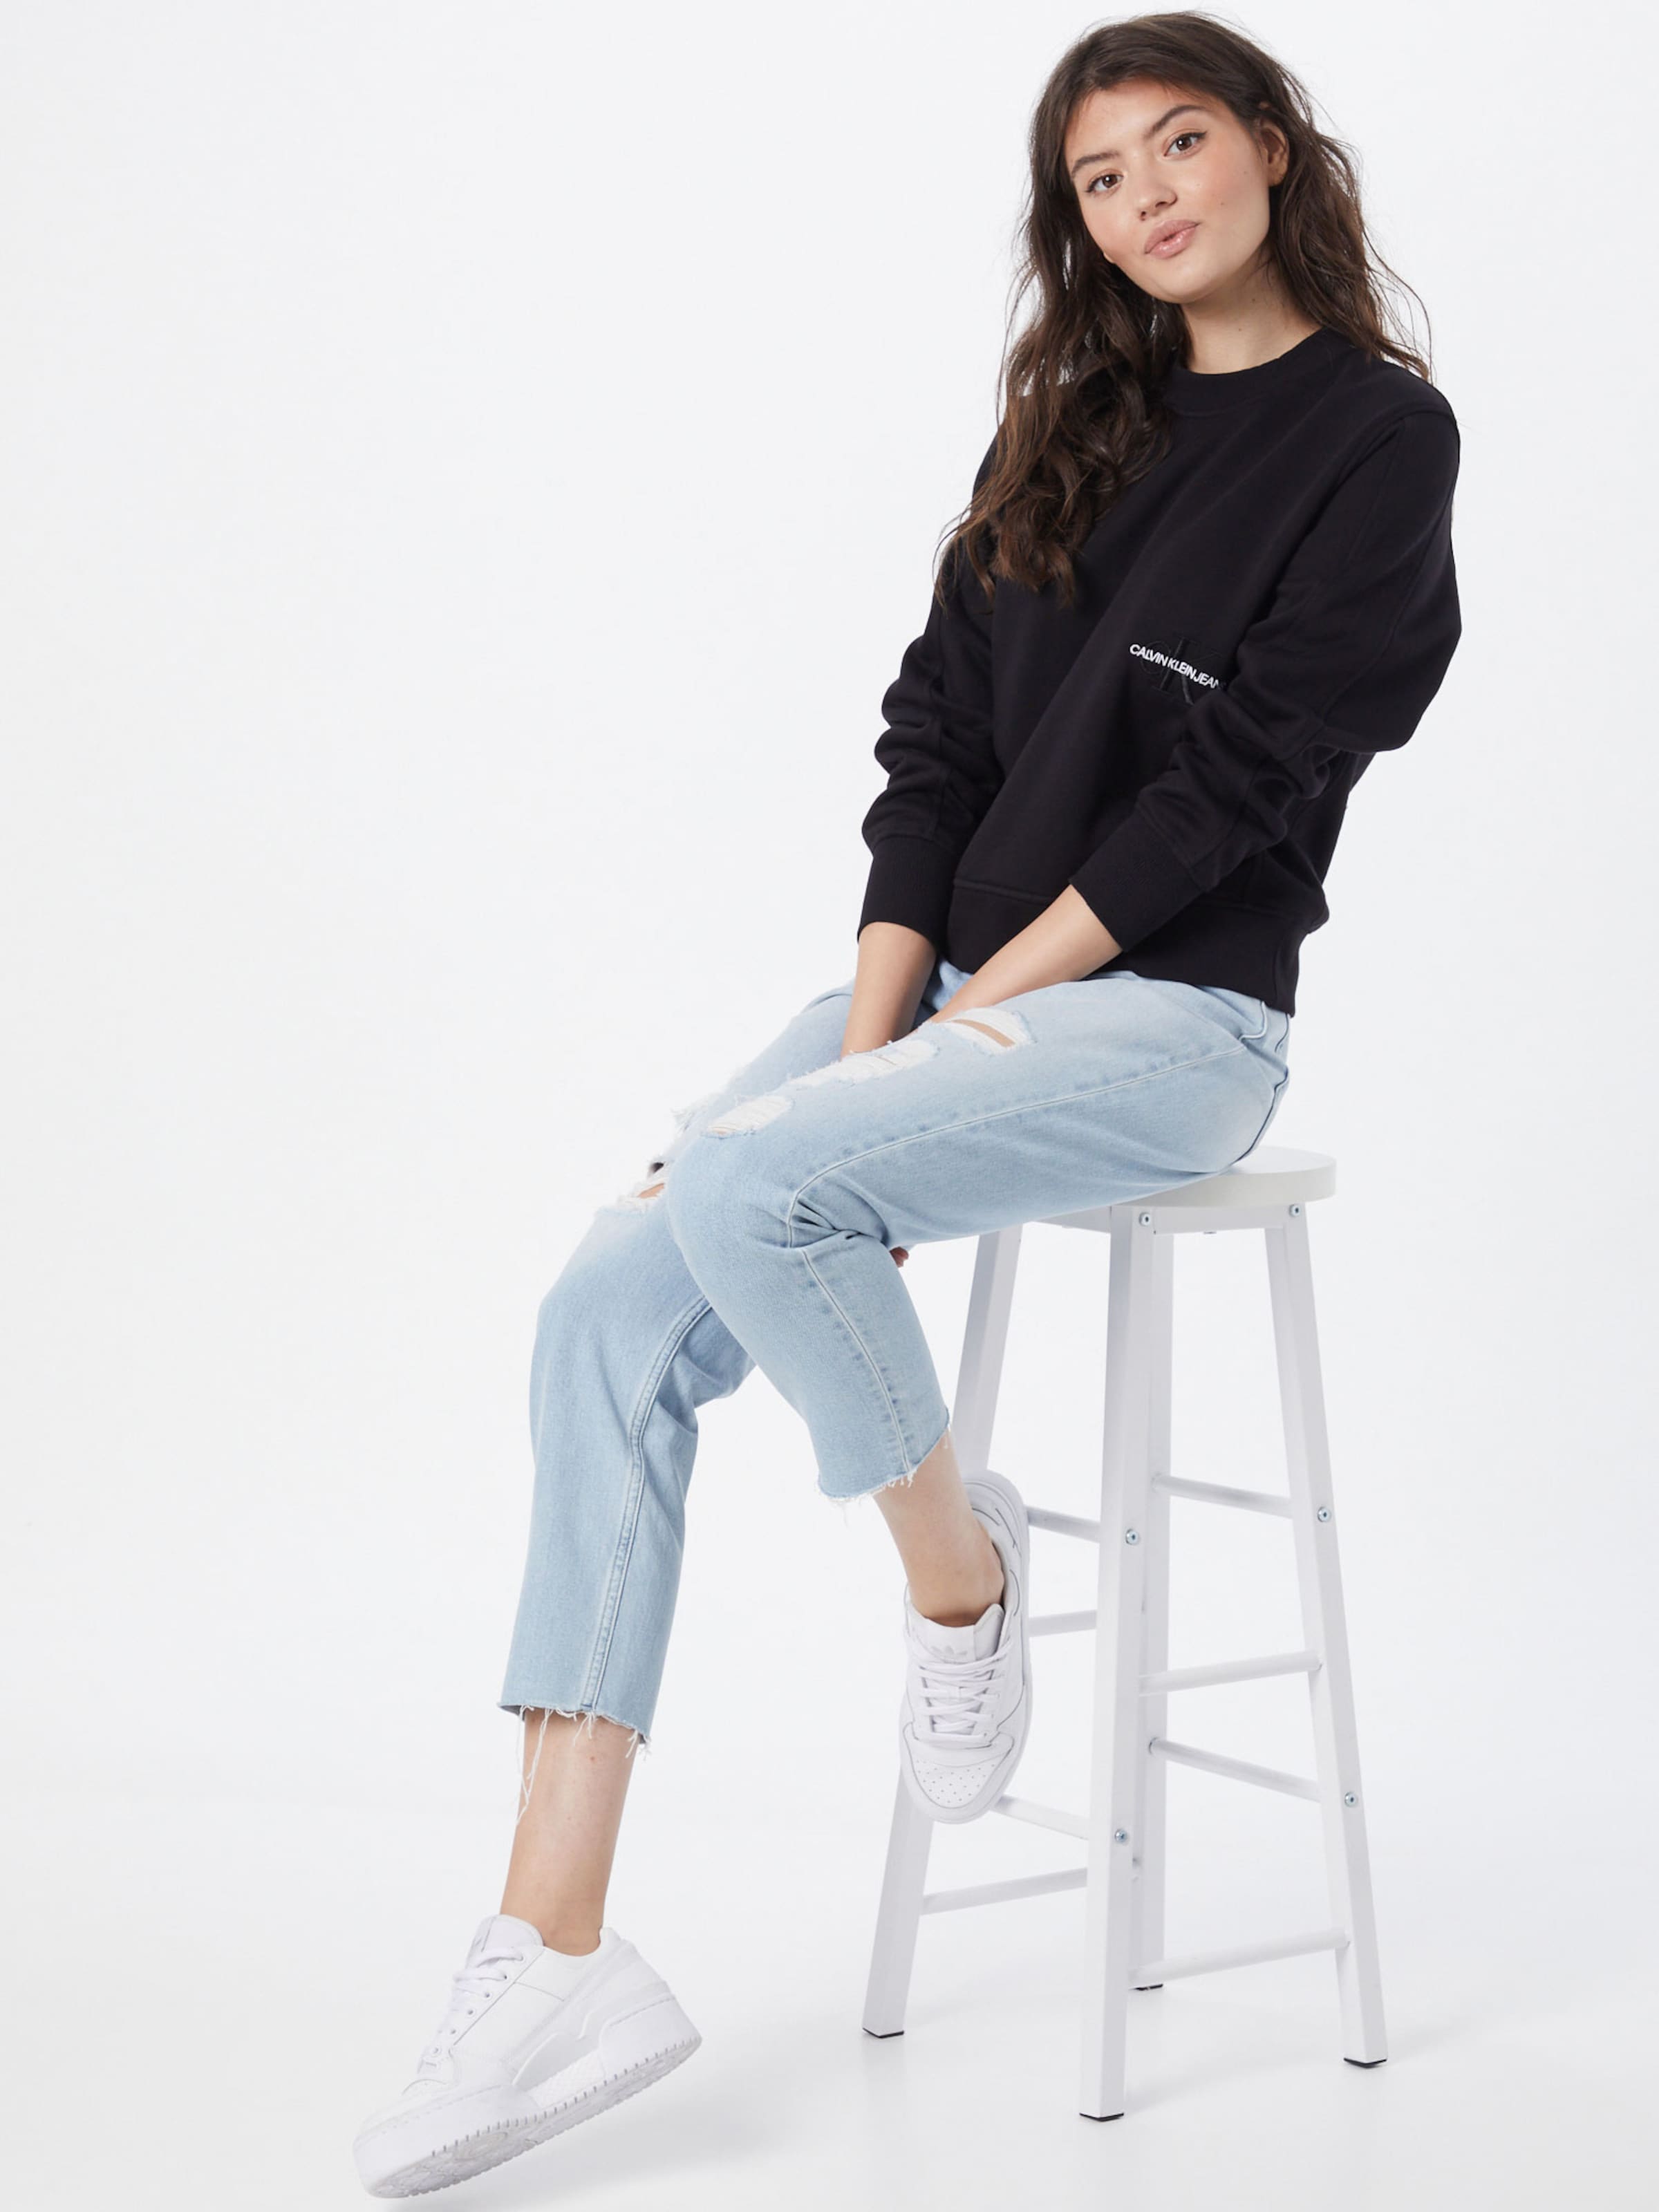 Calvin Klein Jeans Sweatshirt in Schwarz 